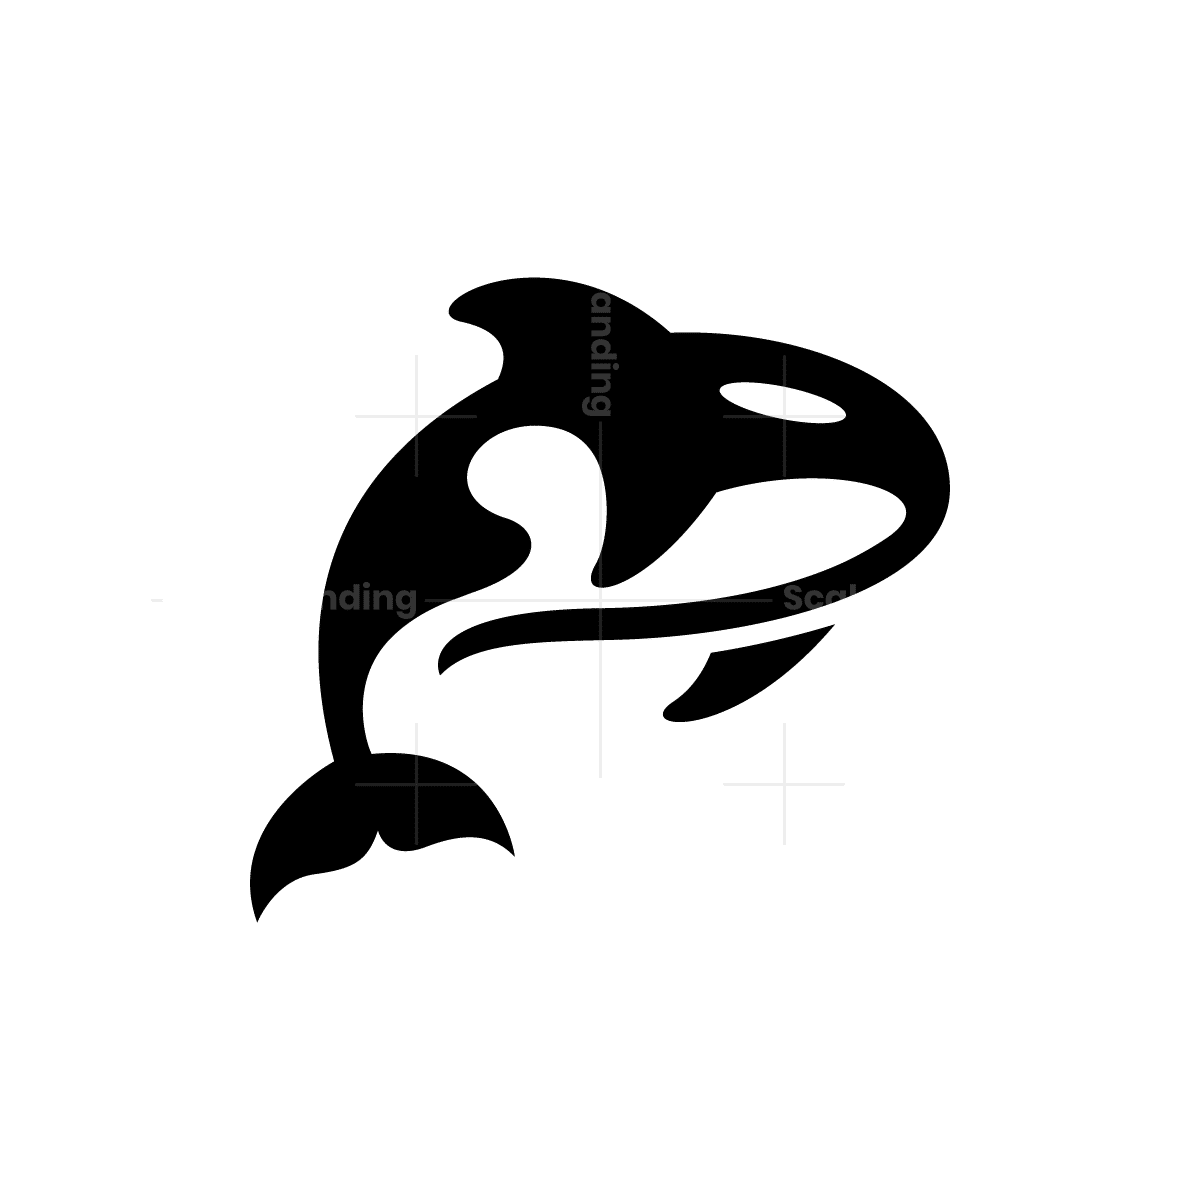 Logo Orca